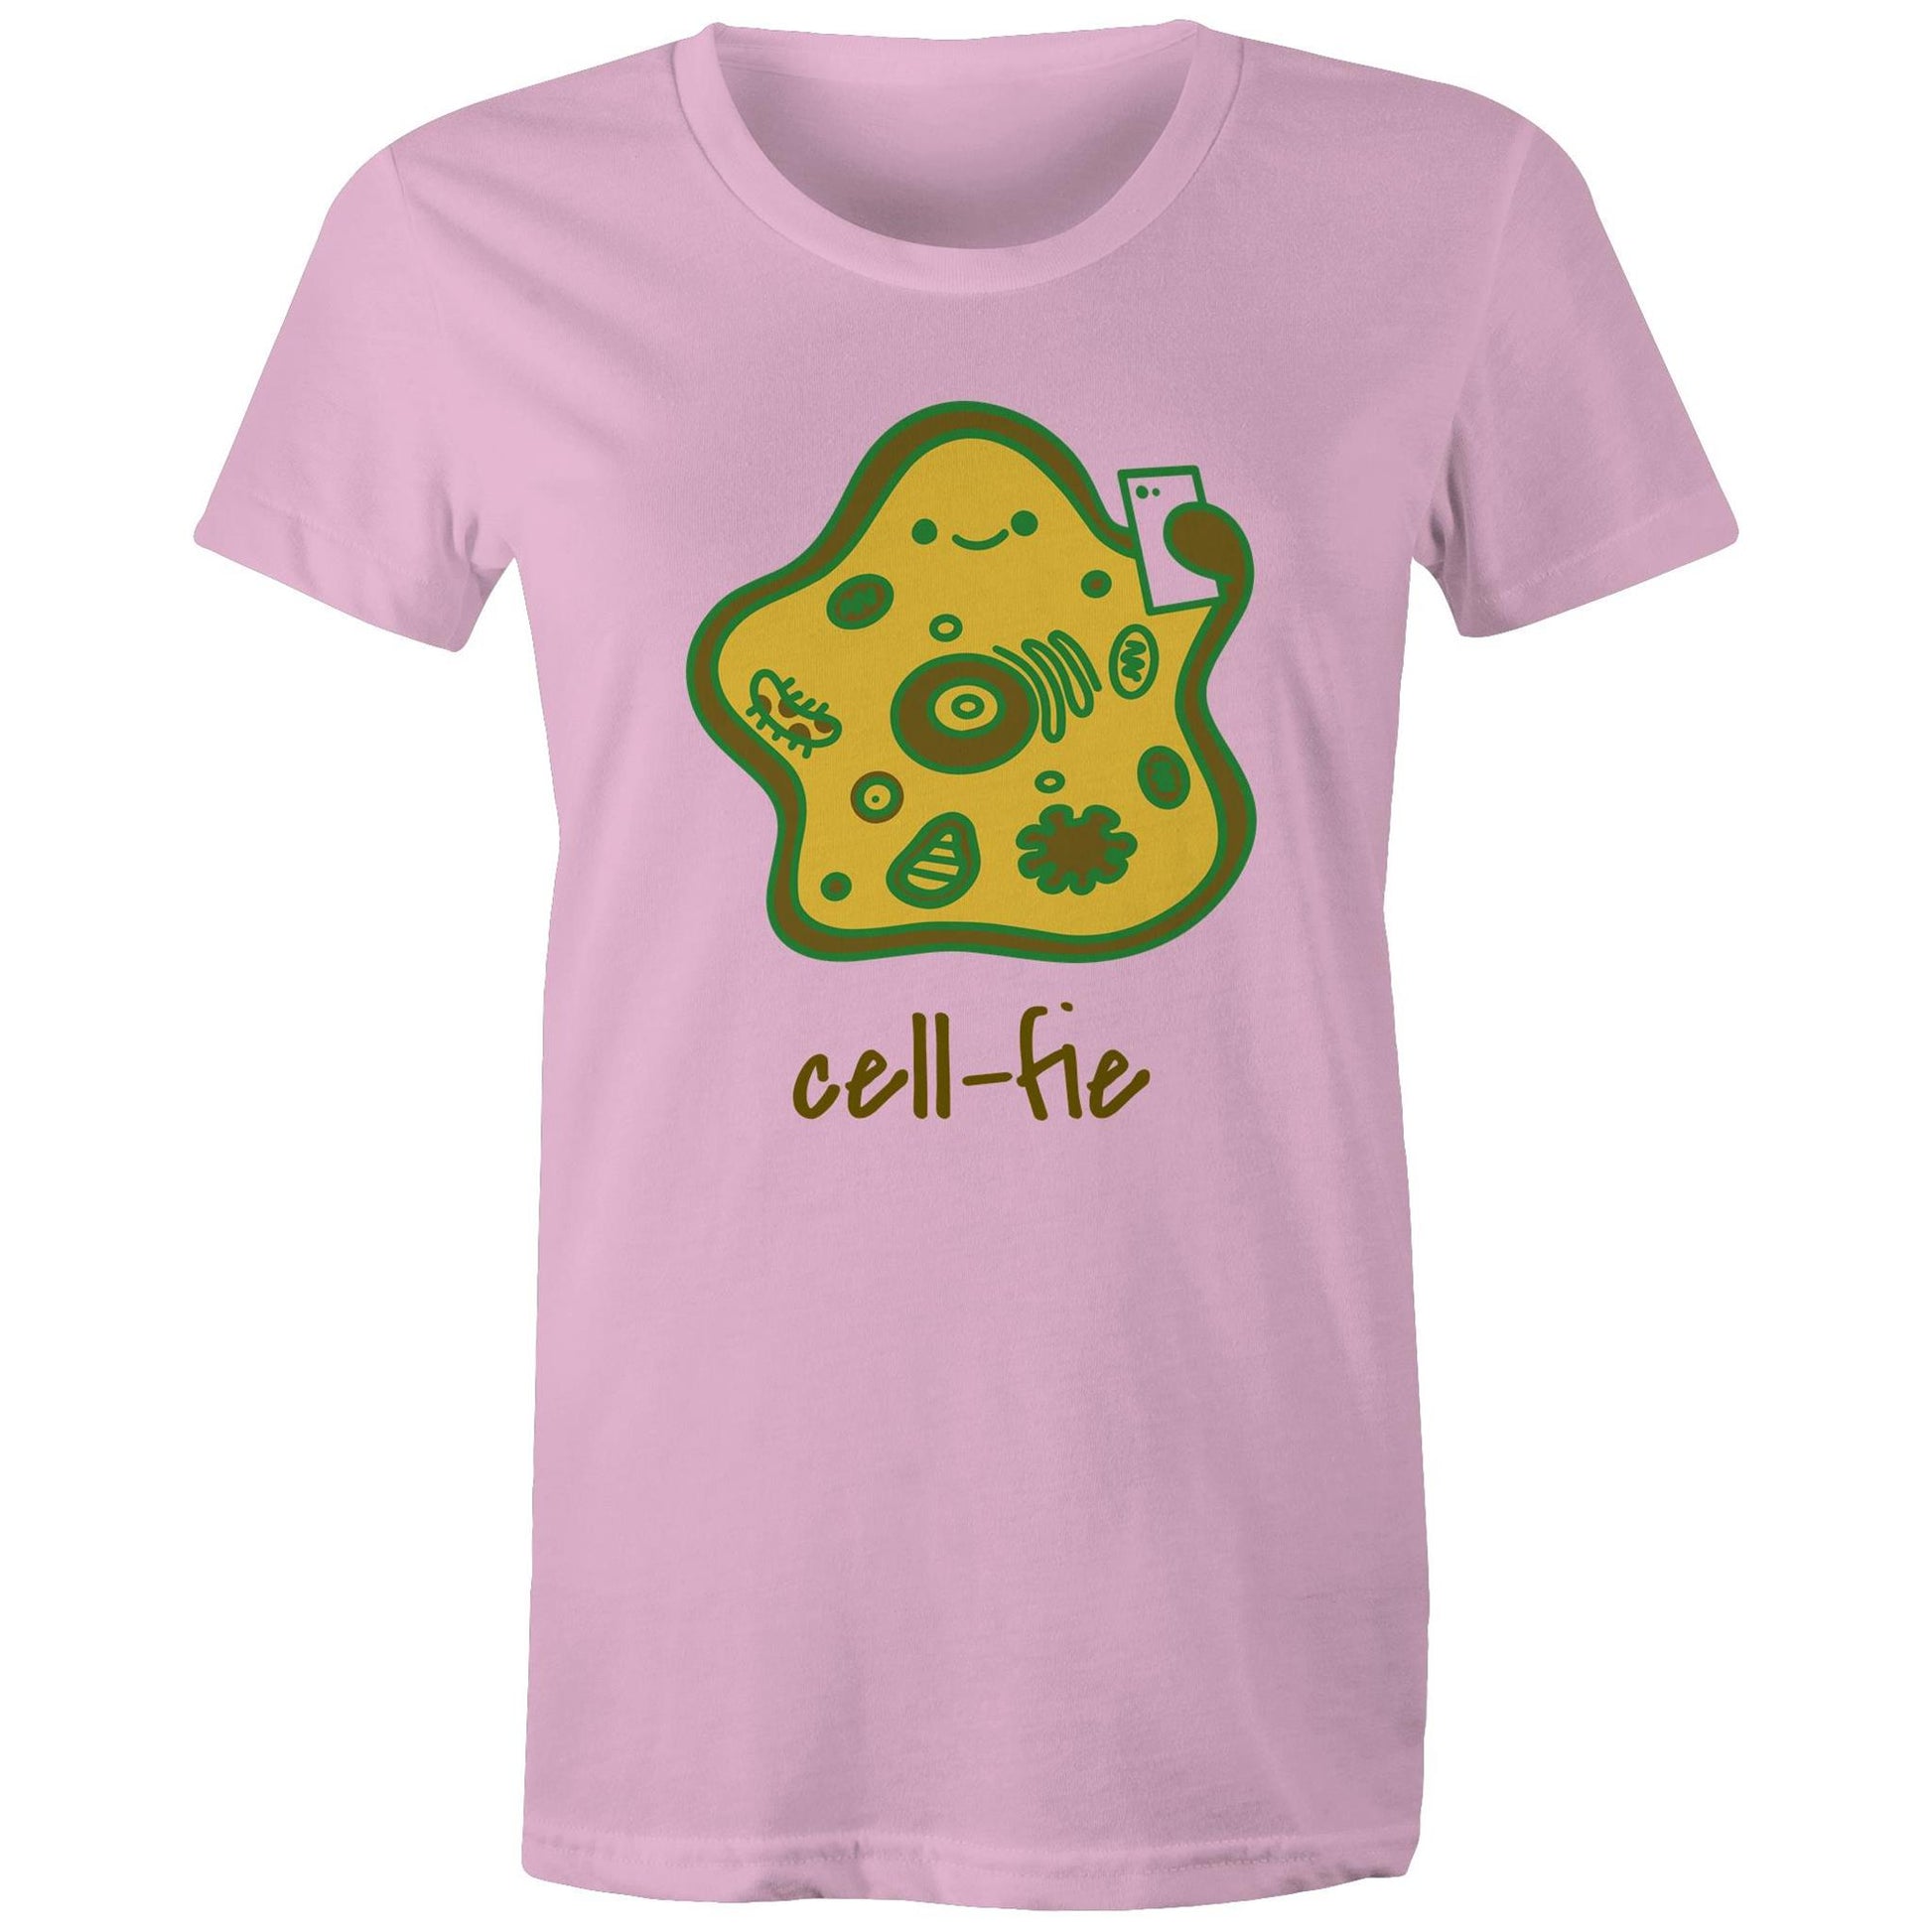 Cell-fie - Womens T-shirt Pink Womens T-shirt Science